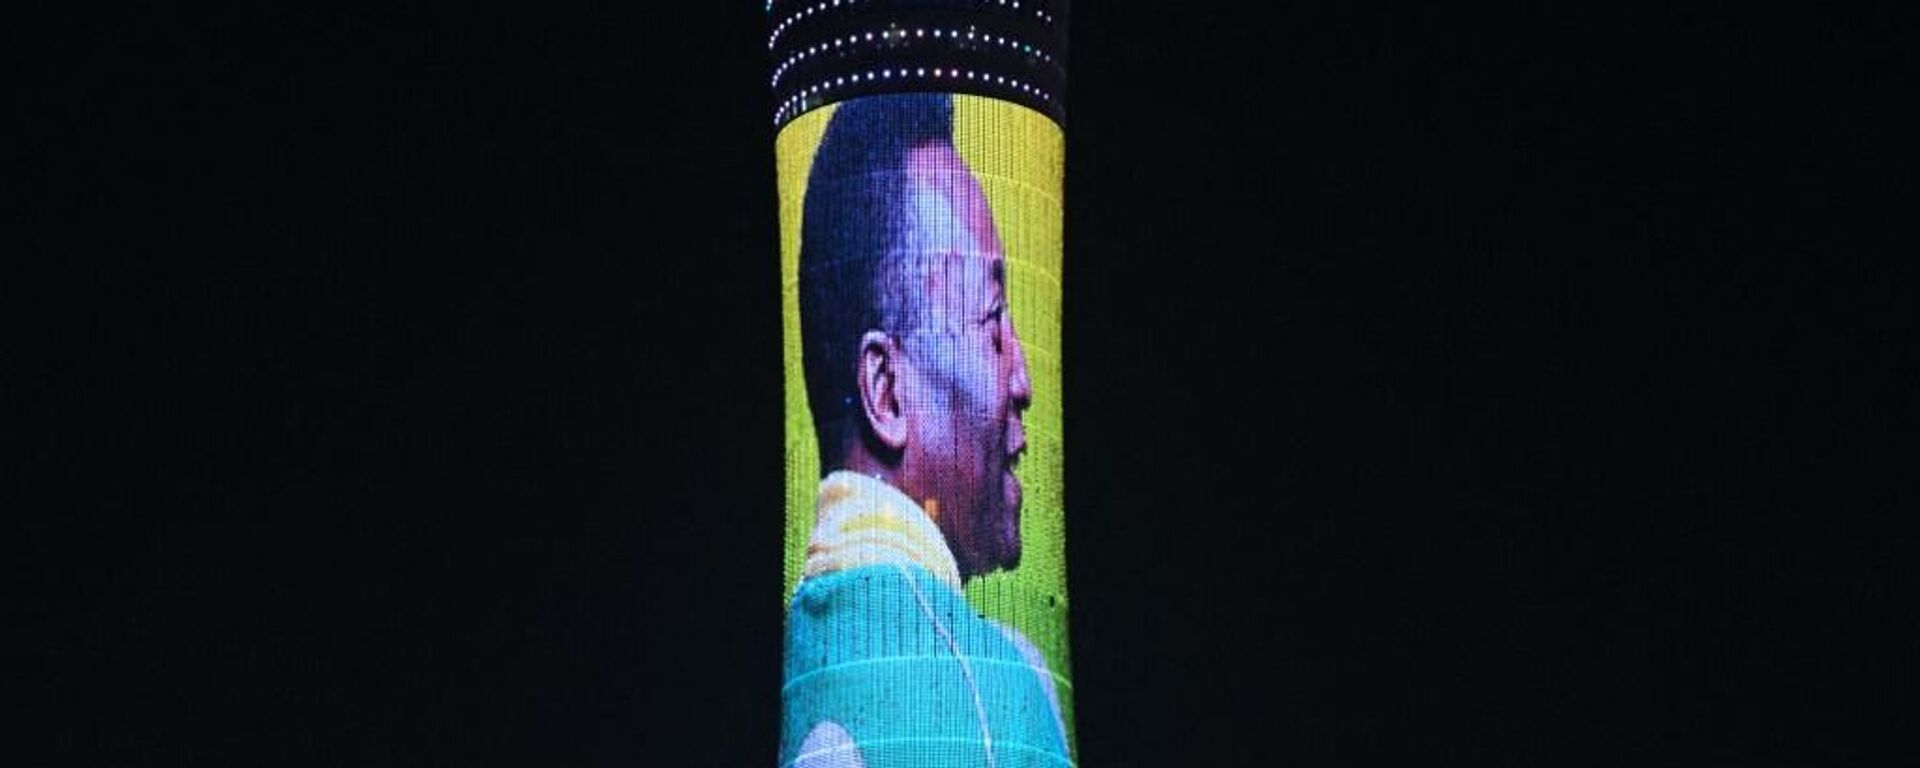 La Torre Aspire de la ciudad de Doha, iluminada en apoyo a Pelé, en el Mundial de Catar 2022 - Sputnik Mundo, 1920, 03.12.2022